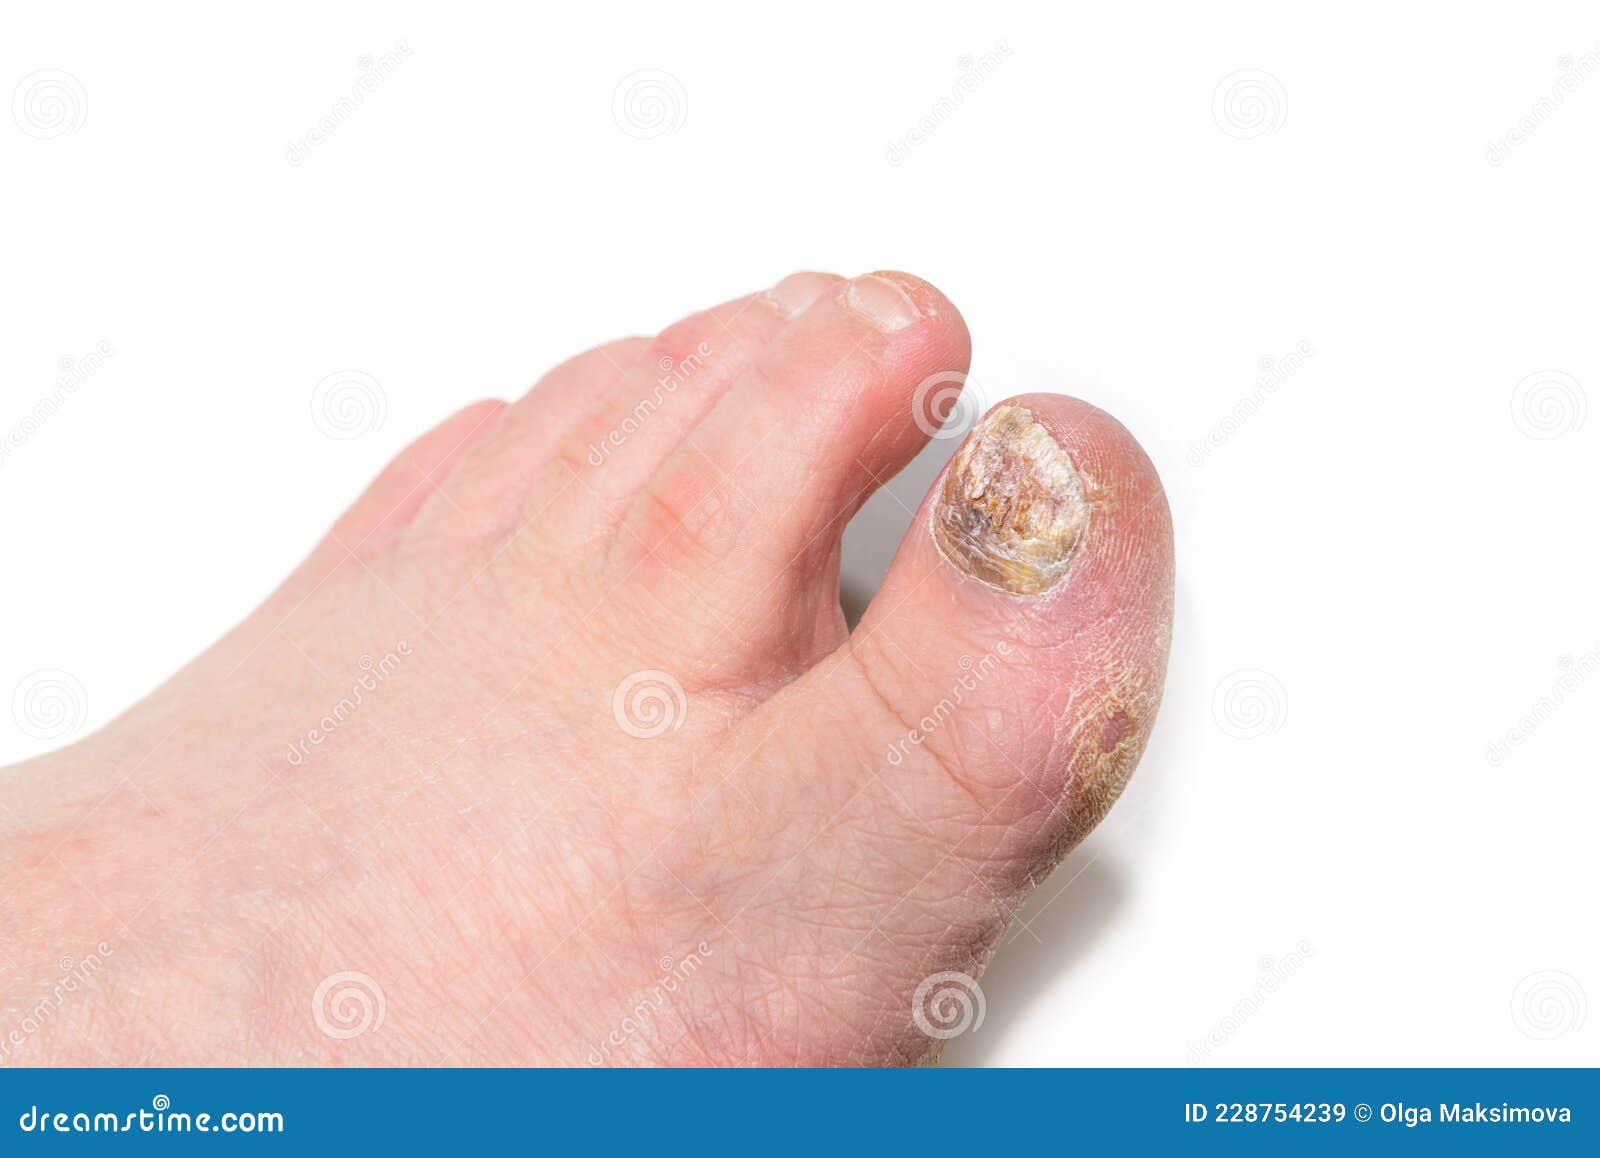 kezelése foot nail gomba távolítsa el a körömgombát lézerrel